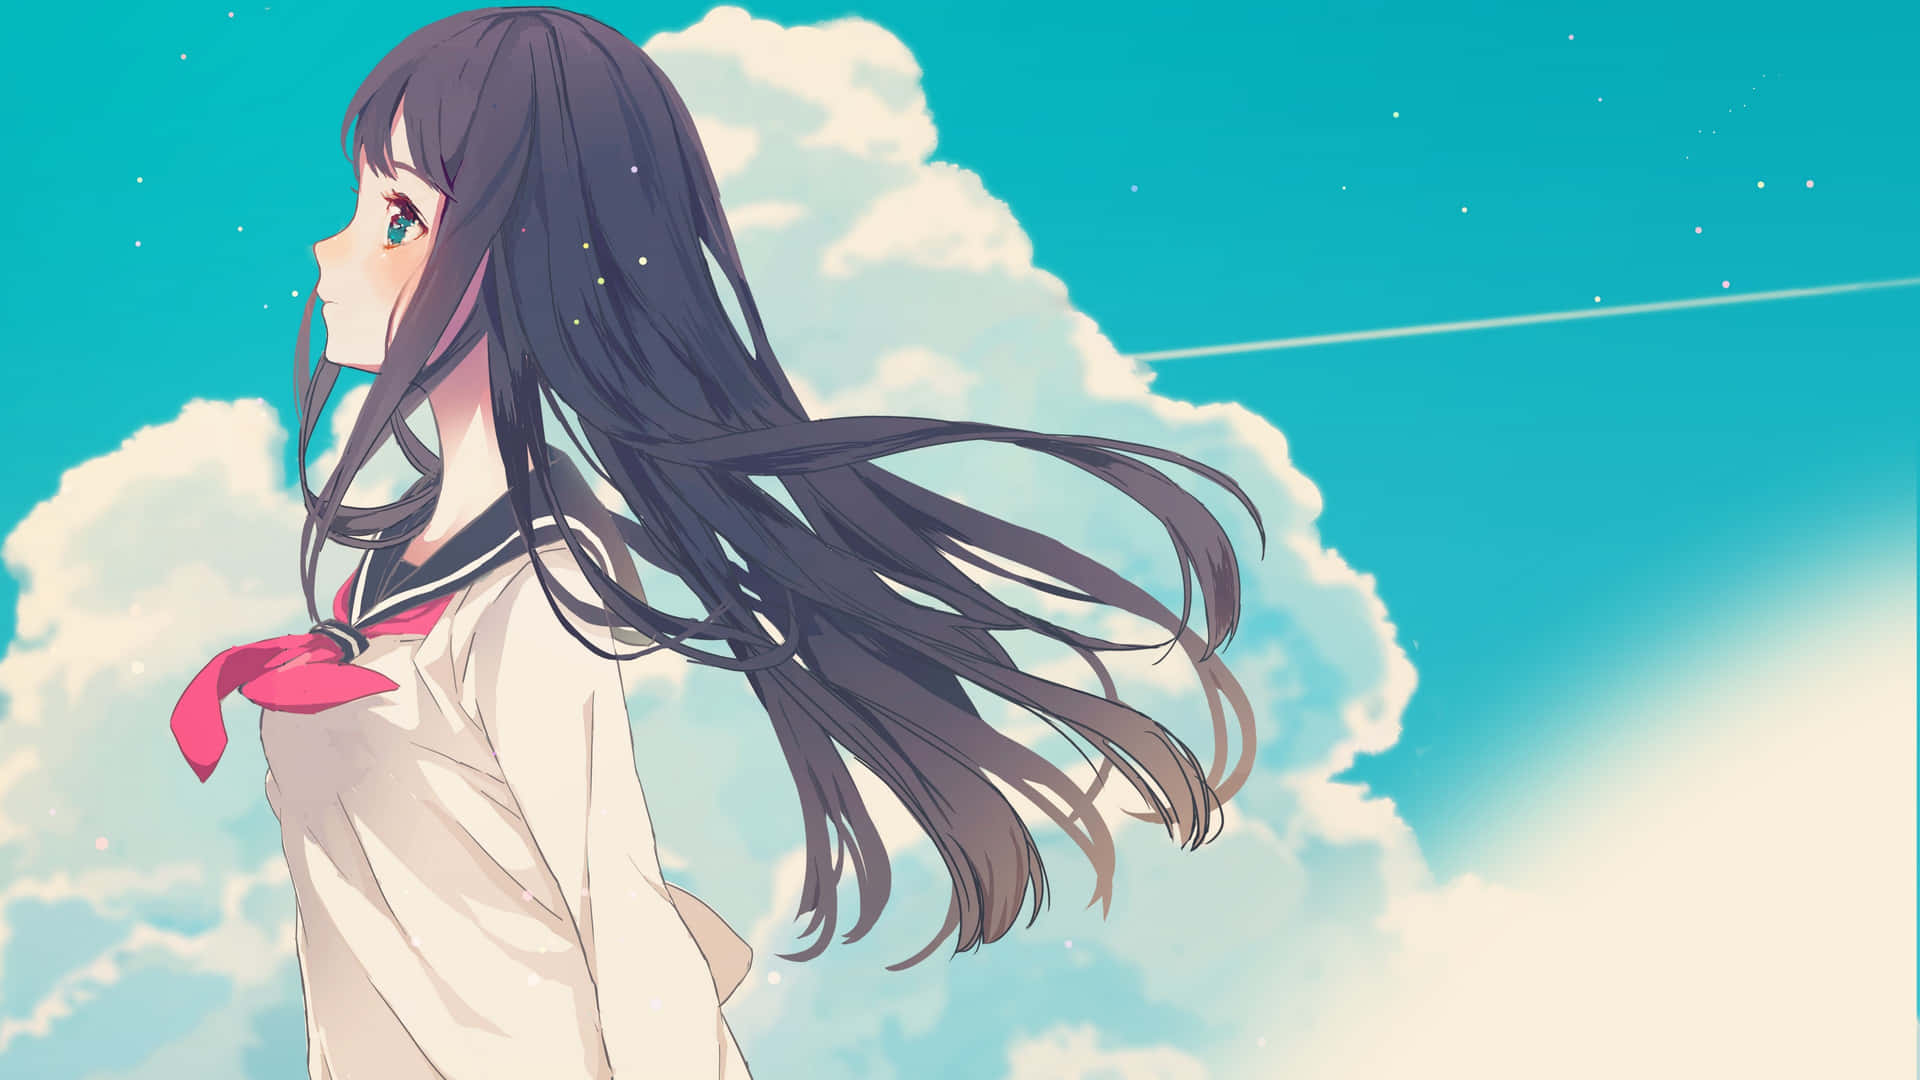 Blushing Anime Girl Side Profile Background